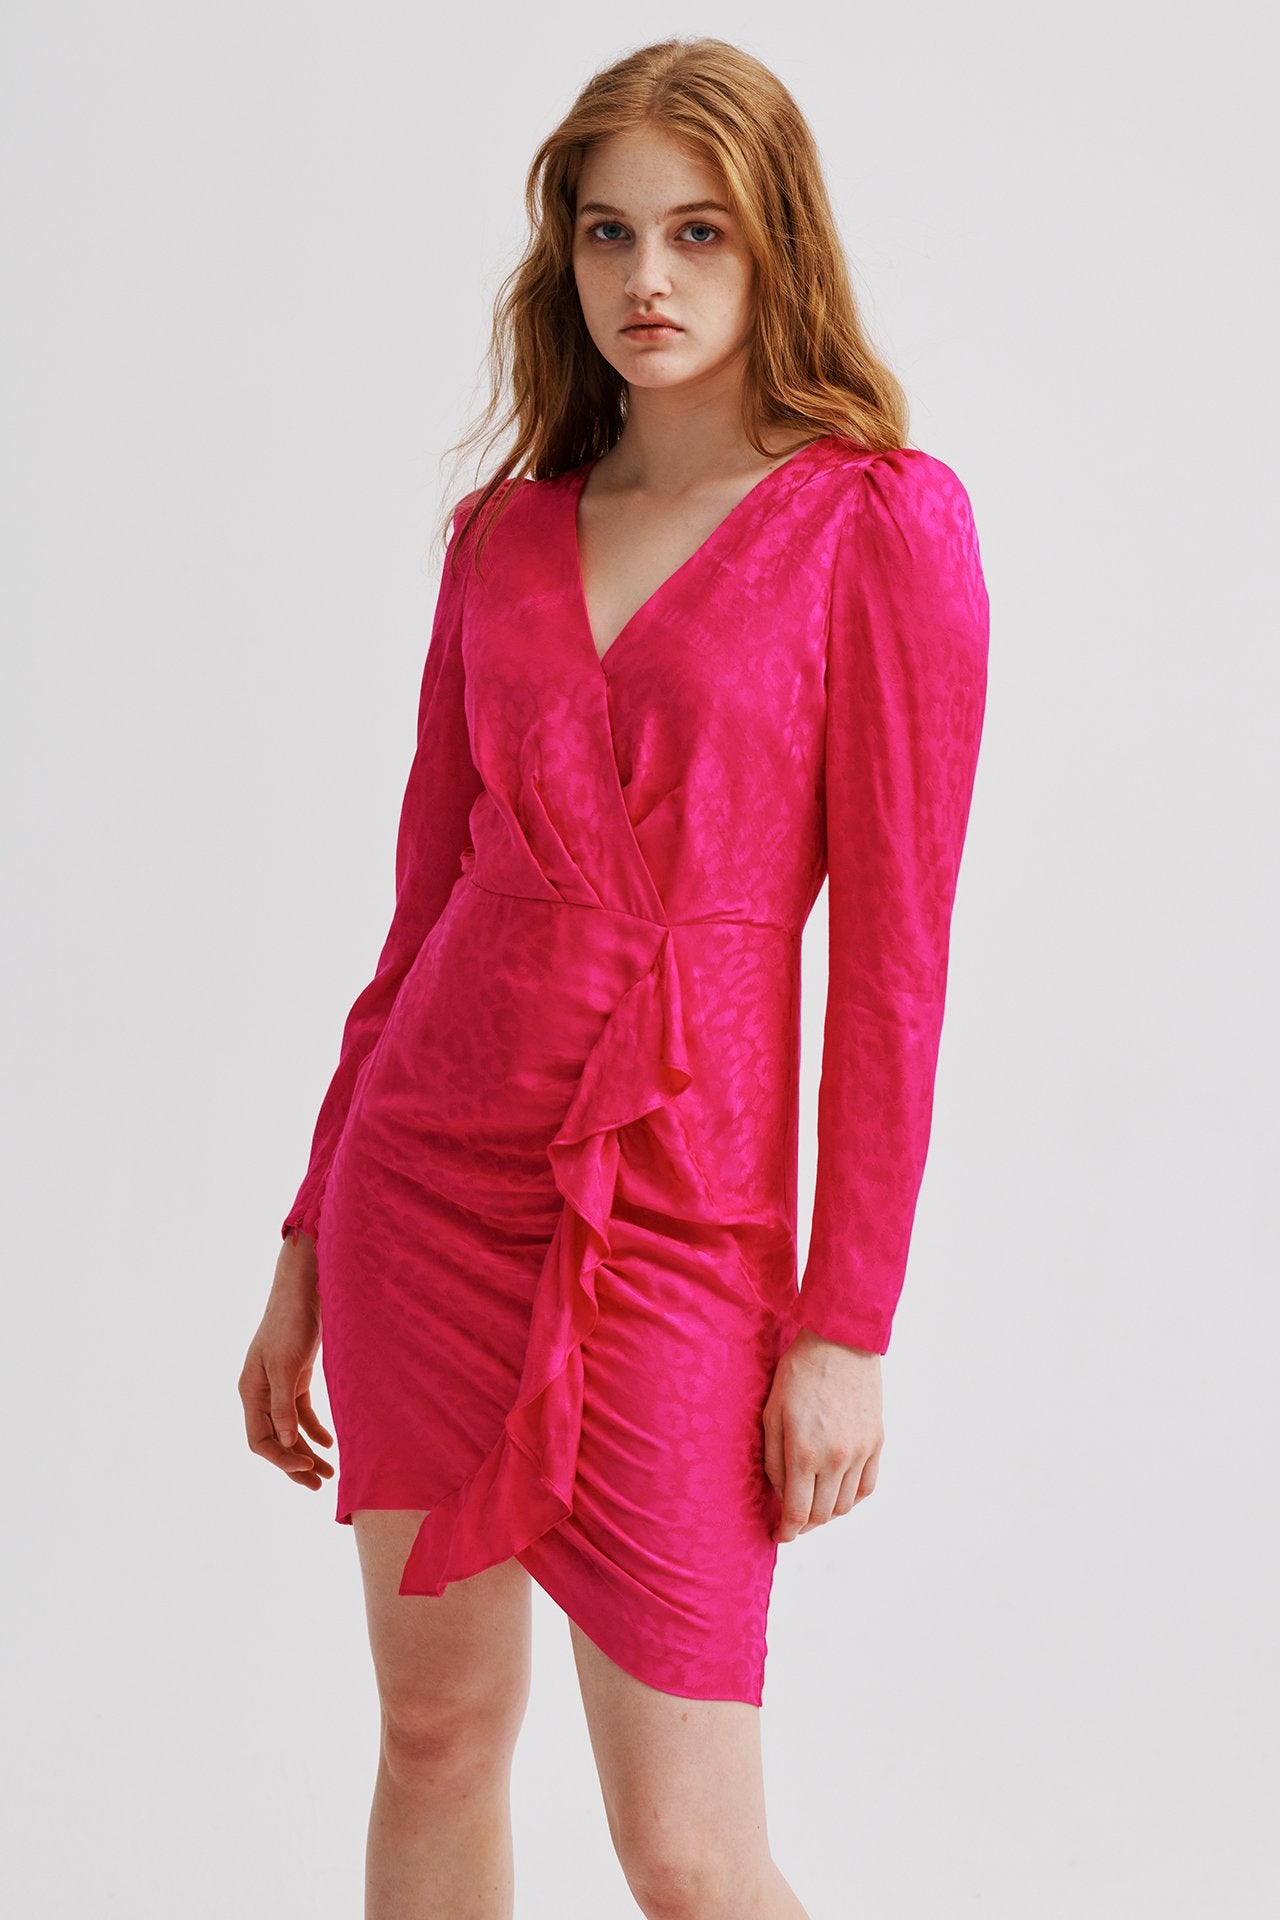 Milly Fawn Cheetah Jacquard Dress In Shocking Pink